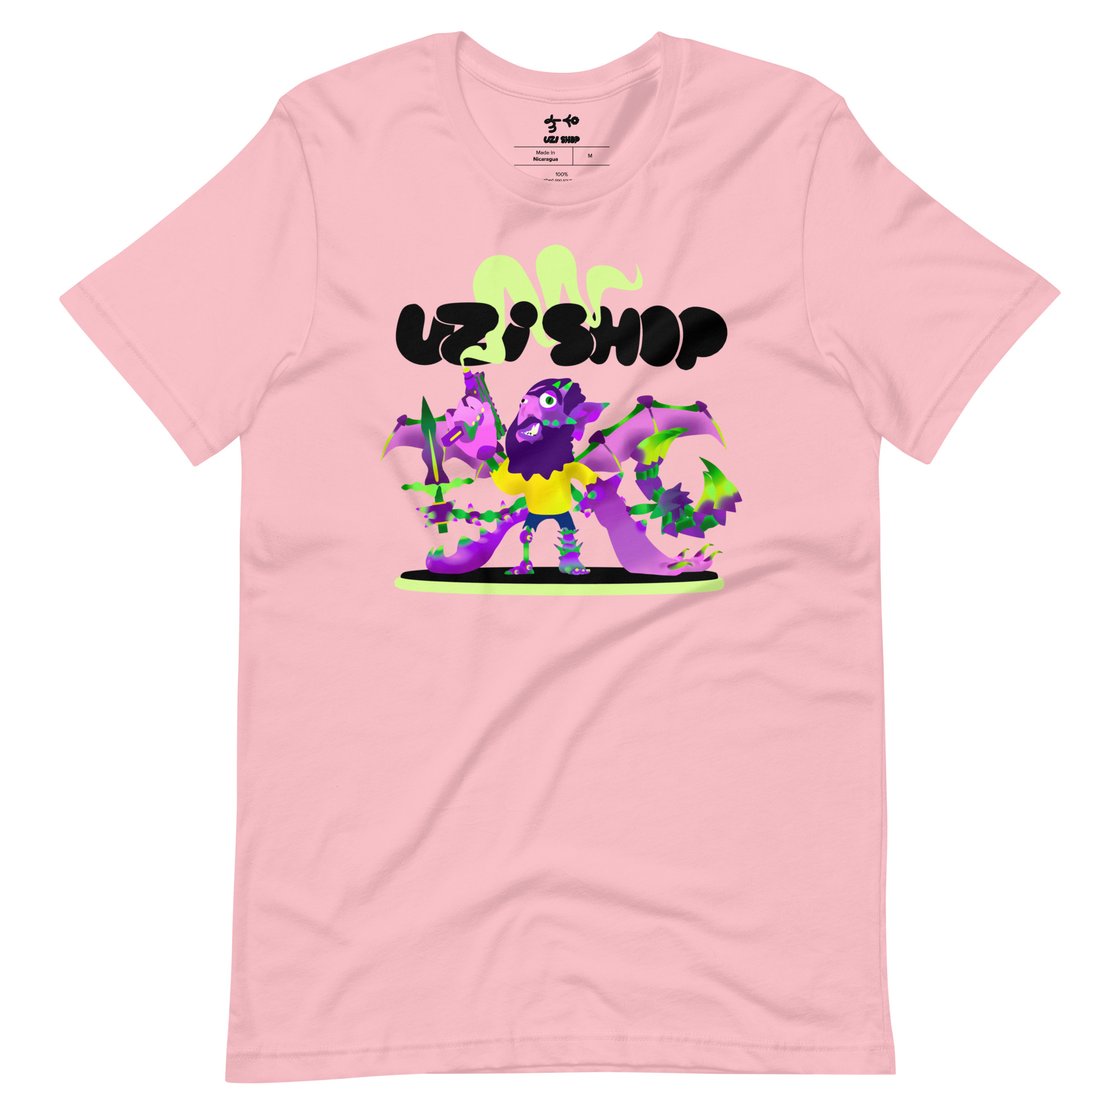 Image of Uzi shop logo / Unisex t-shirt